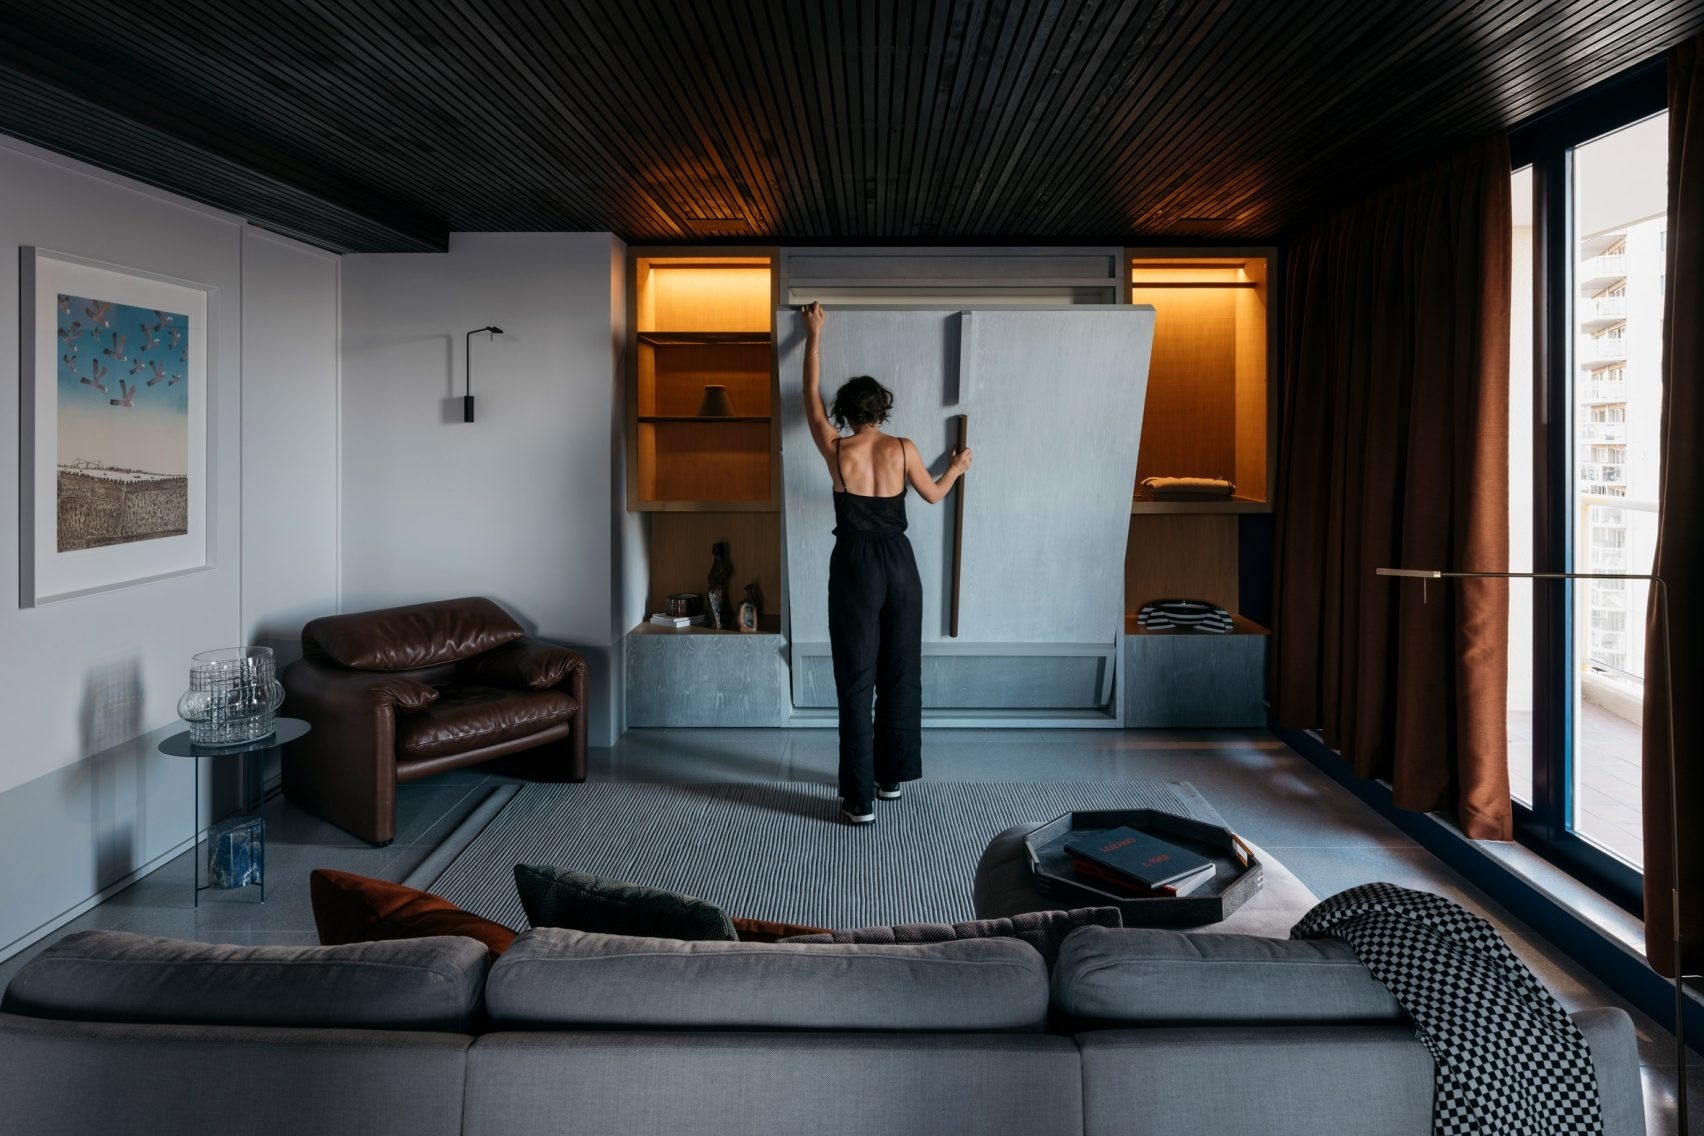 Trần ốp gỗ tối màu tạo cảm giác gần gũi và ấm áp cho không gian phòng khách vốn rộng lớn, sử dụng tone màu chủ đạo cùng nội thất sang trọng.